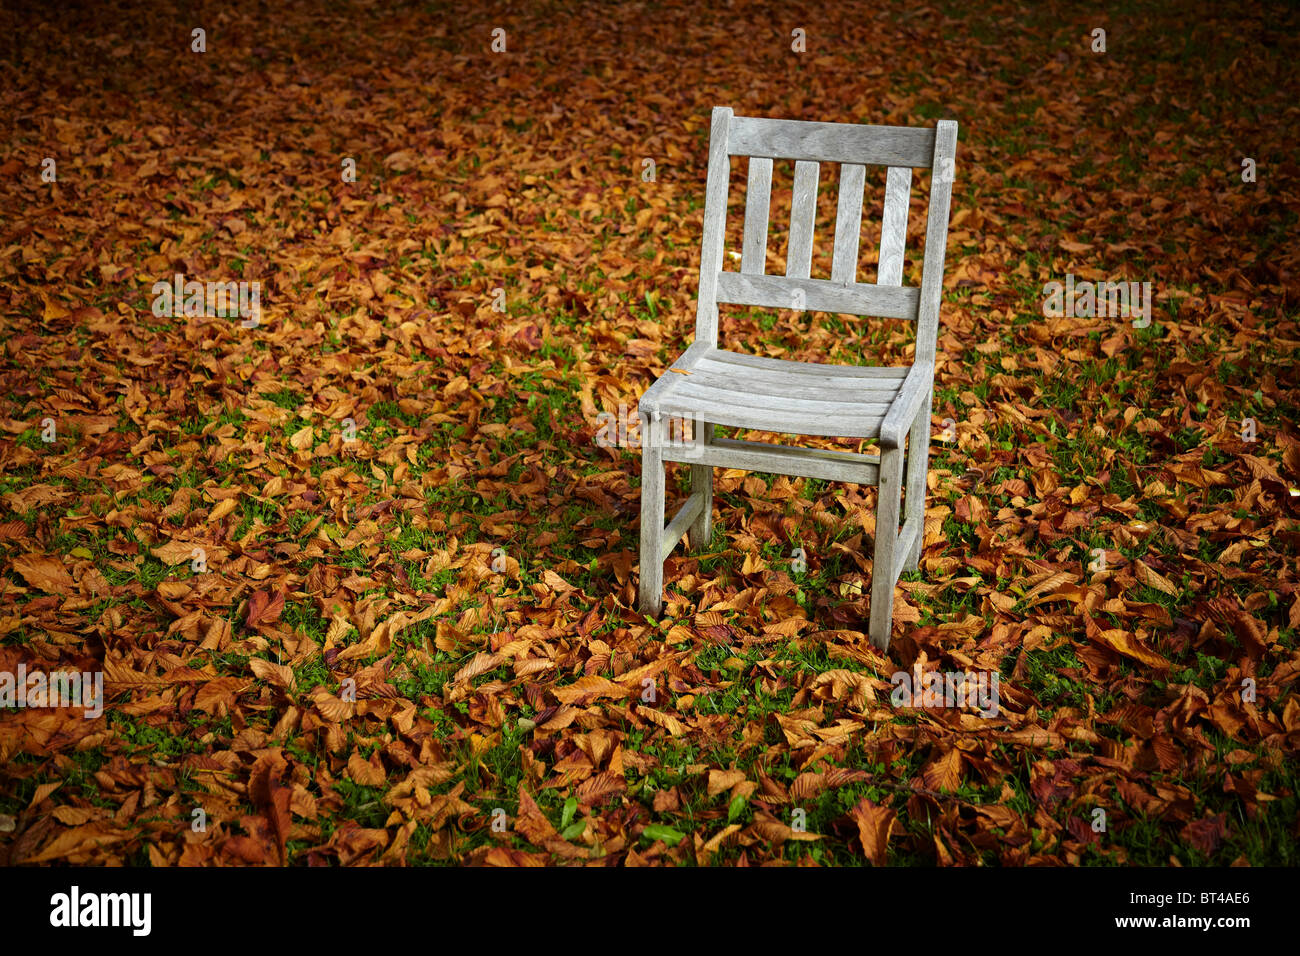 Décor de jardin d'automne au cours d'une seule chaise en teck abandonnée le feuillage marron. Banque D'Images